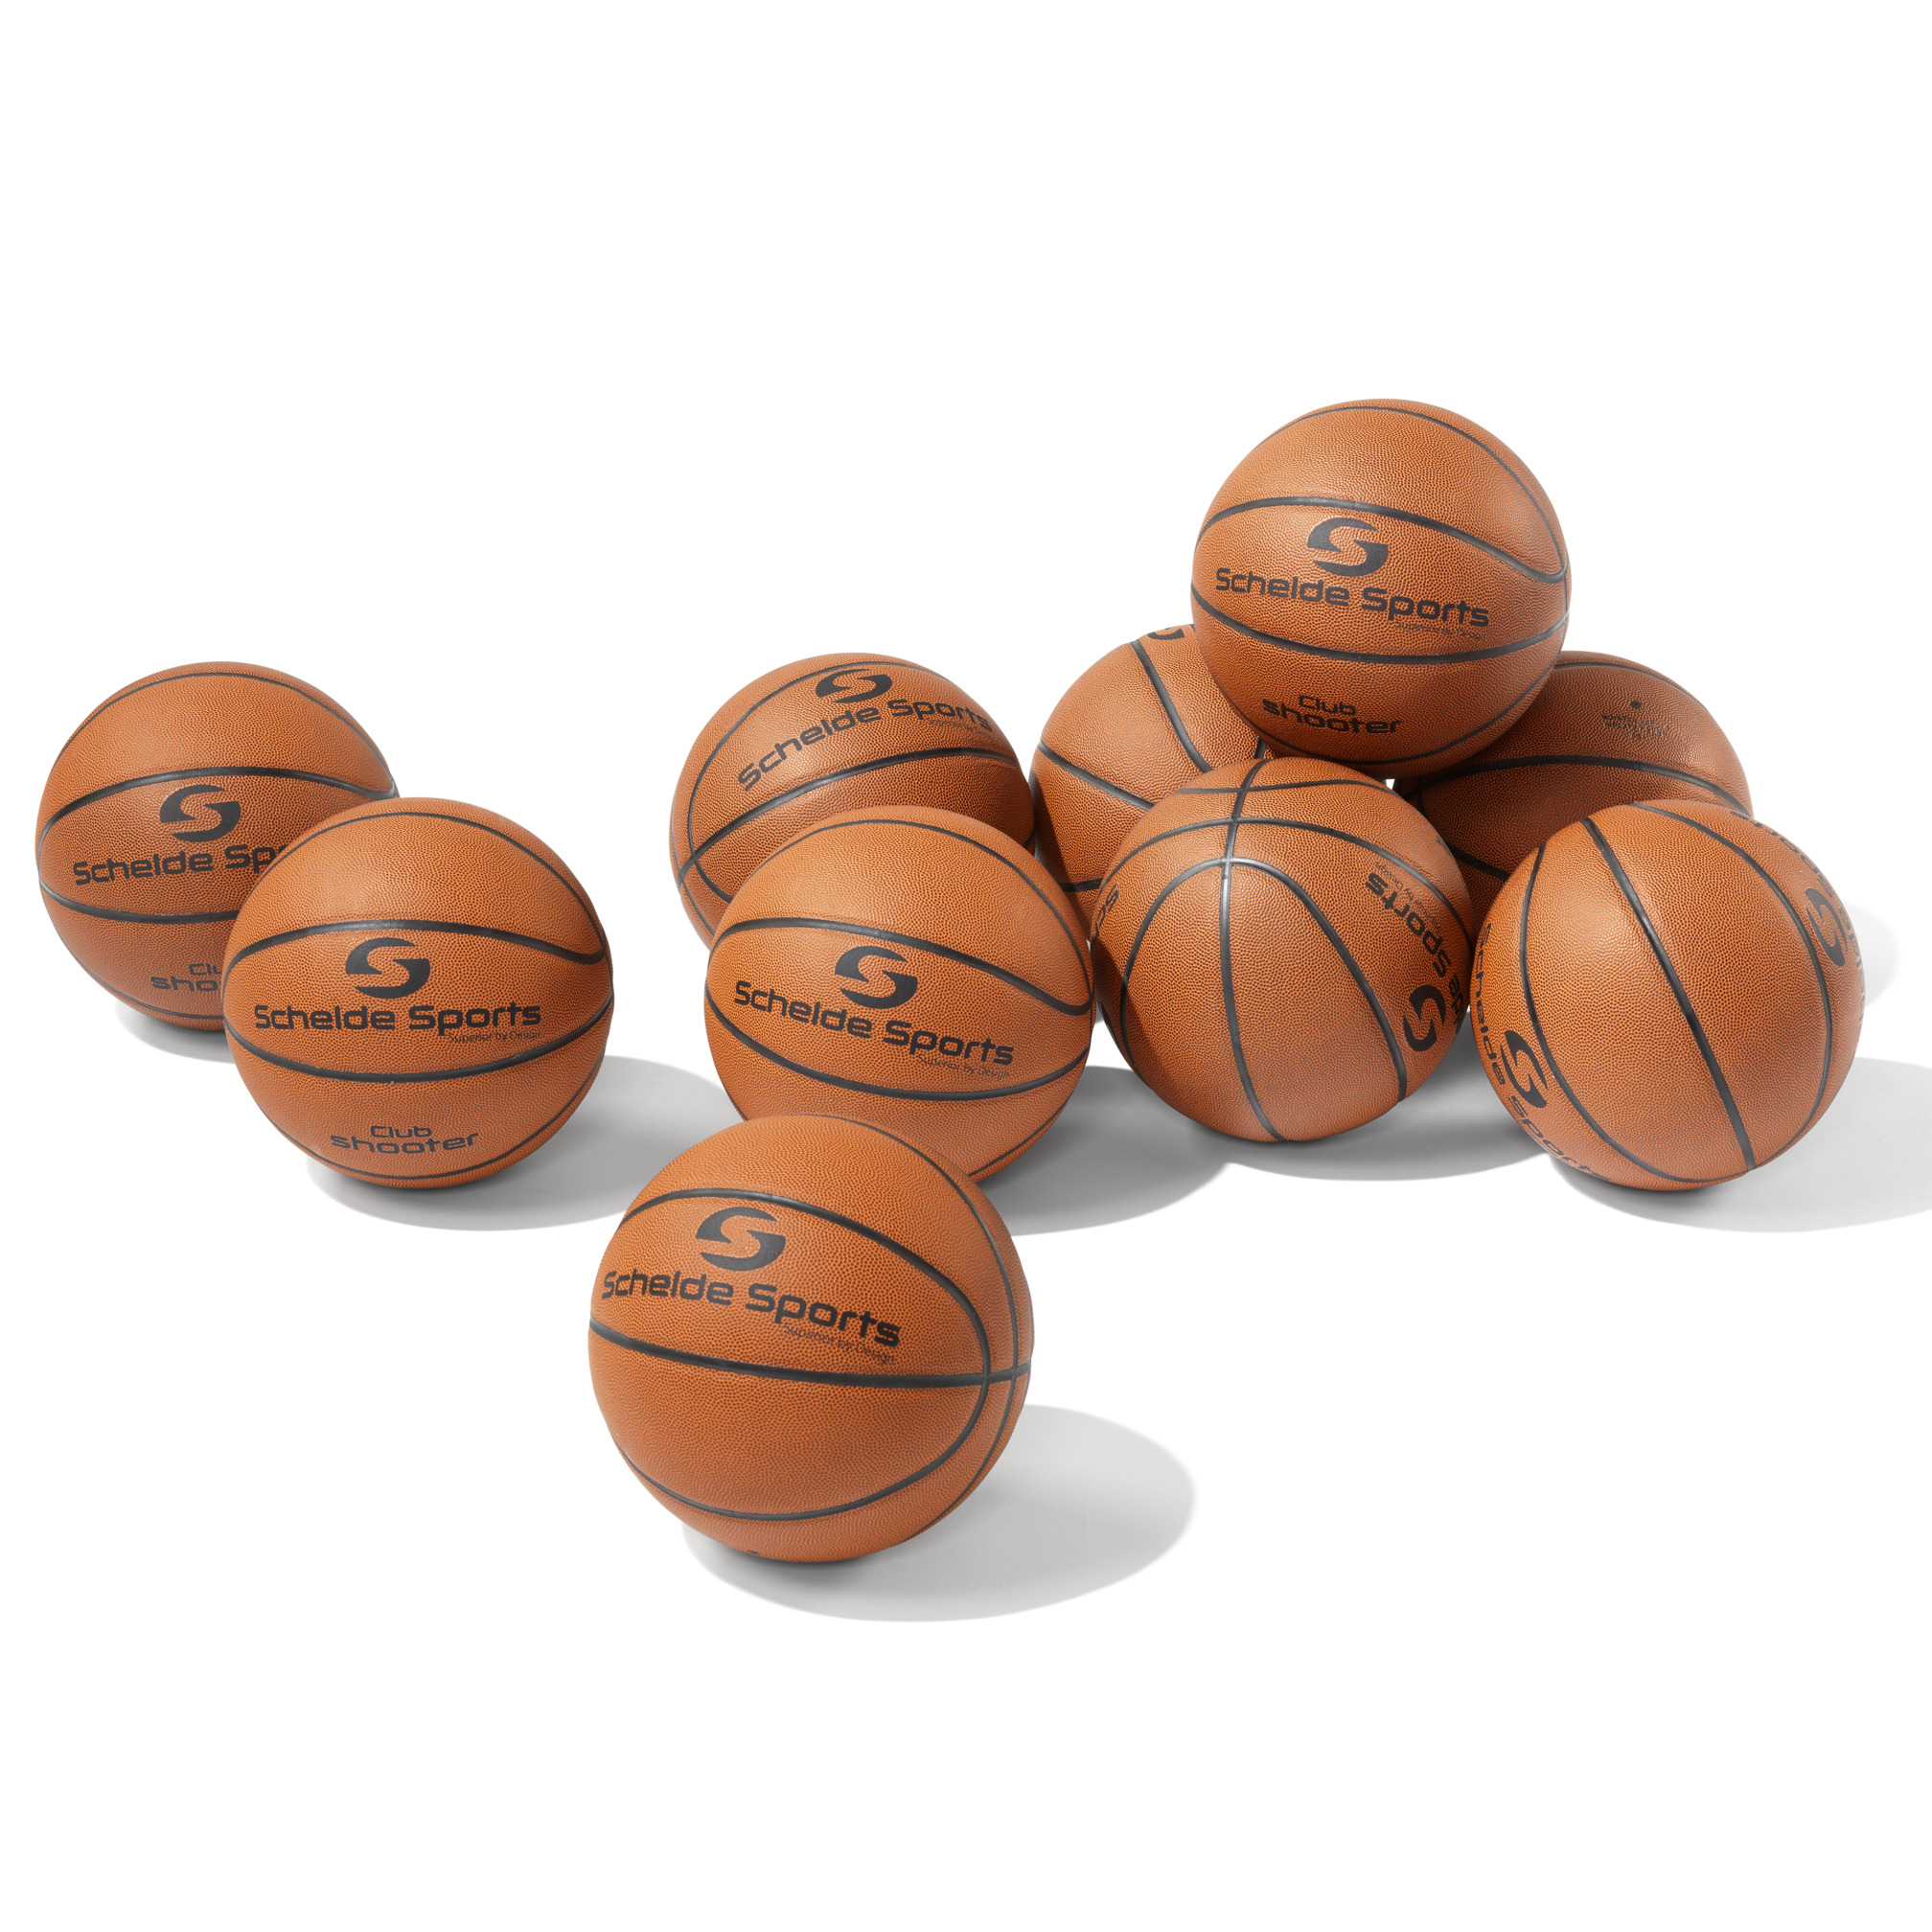 Schelde Sports Basketball Club, Vorteils-Set, größe 7 